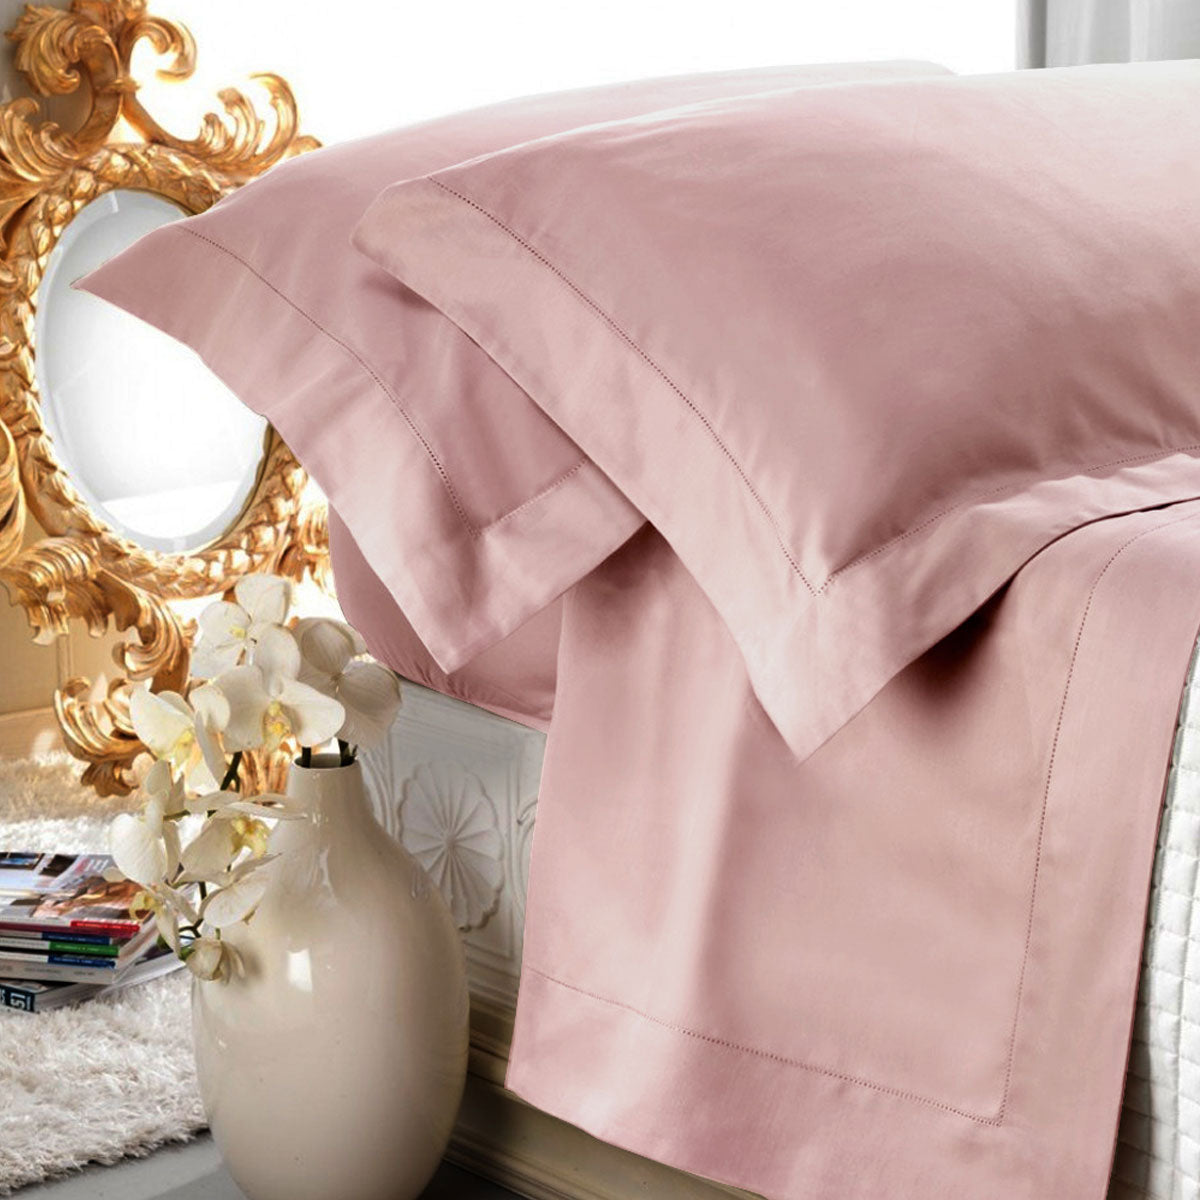 Coppia lenzuola matrimoniale in raso di puro cotone tinta unita colore rosa antico rifinita con orlo a giorno